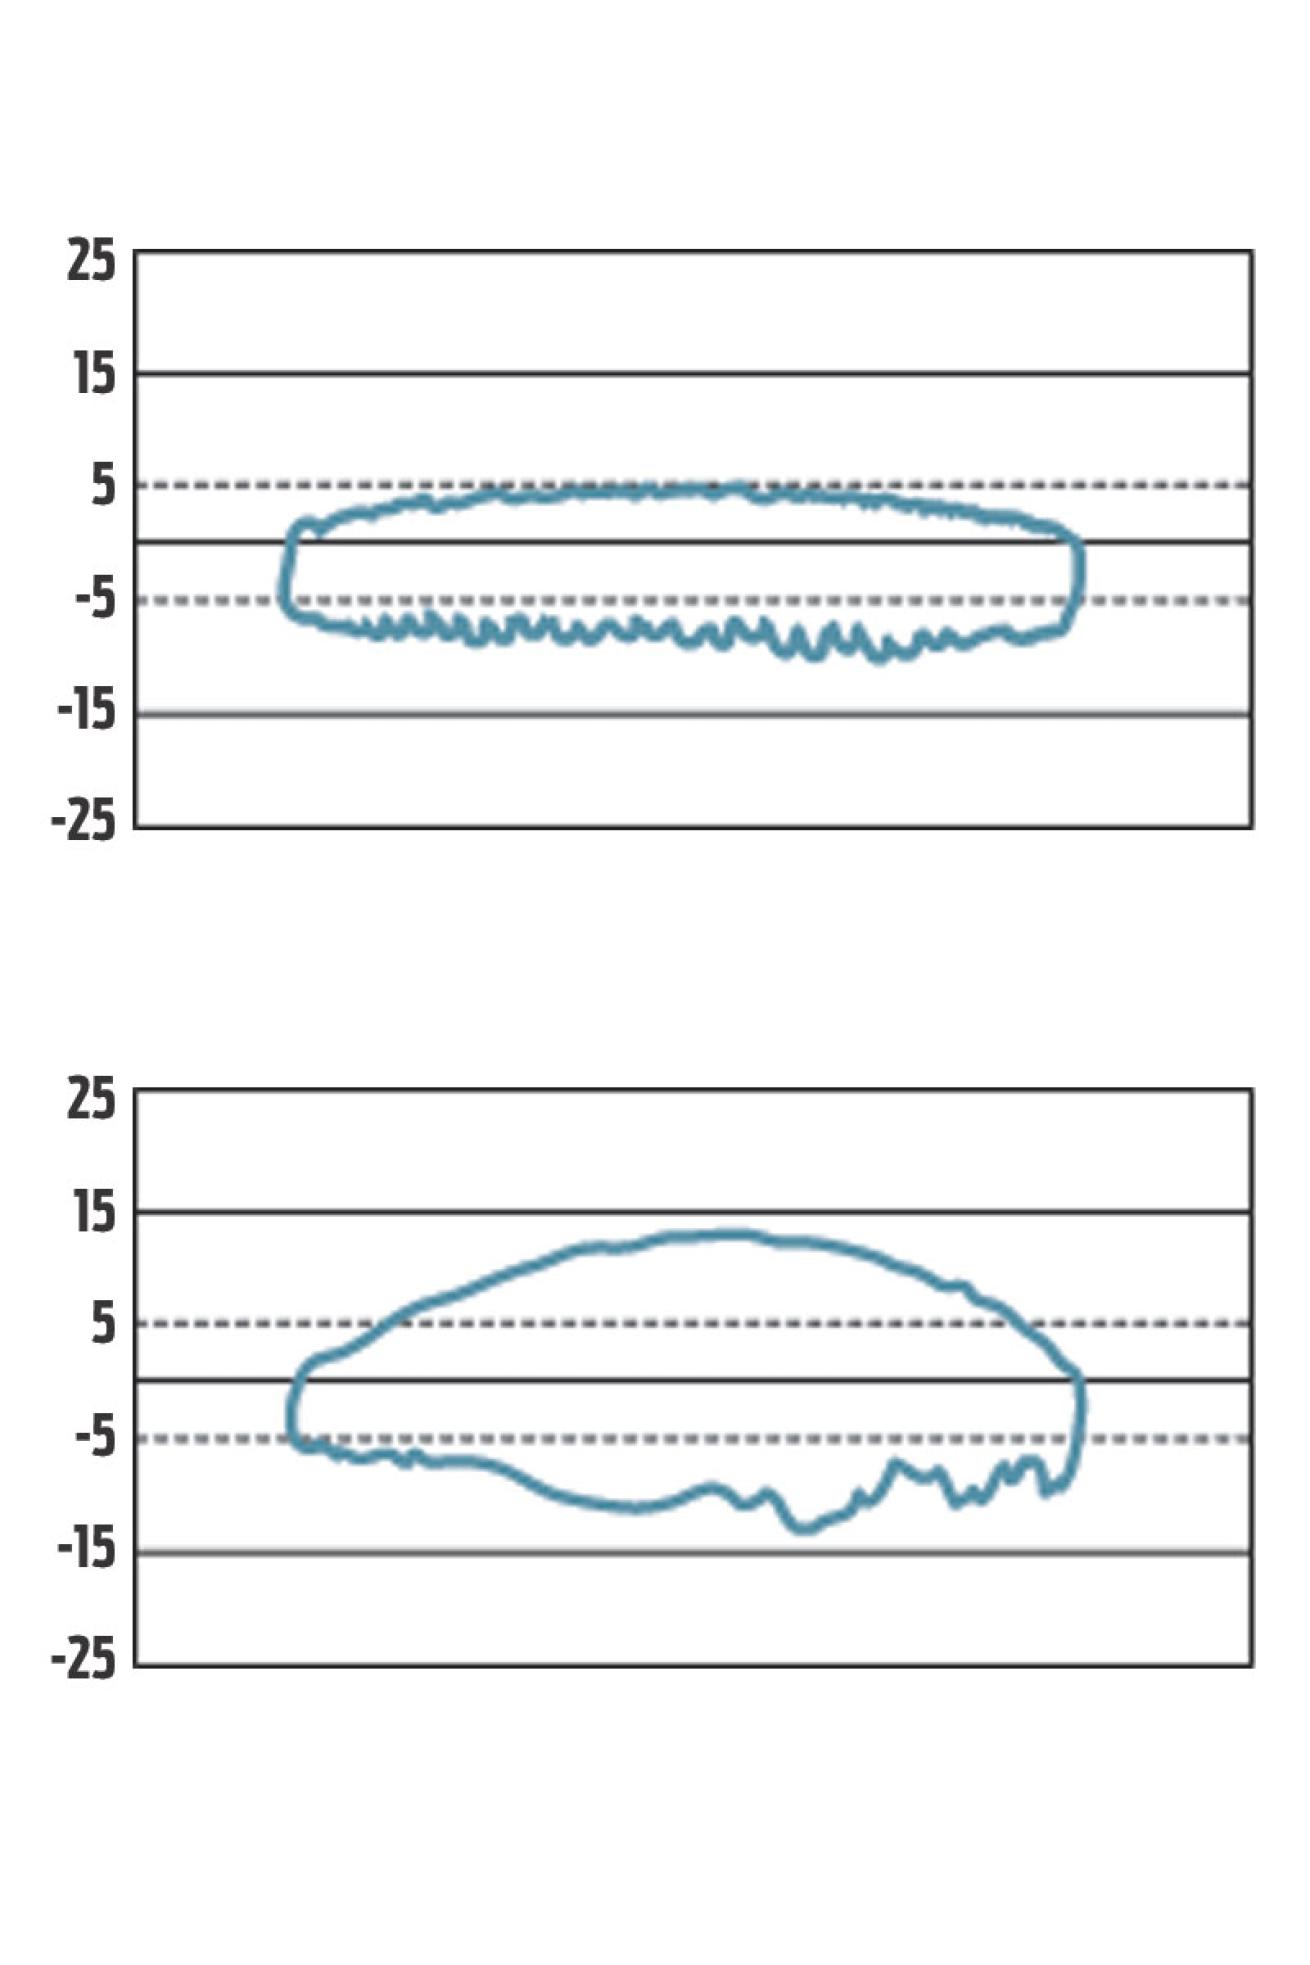 ANSTI charts from ScubaLab scuba diving regulator gear test